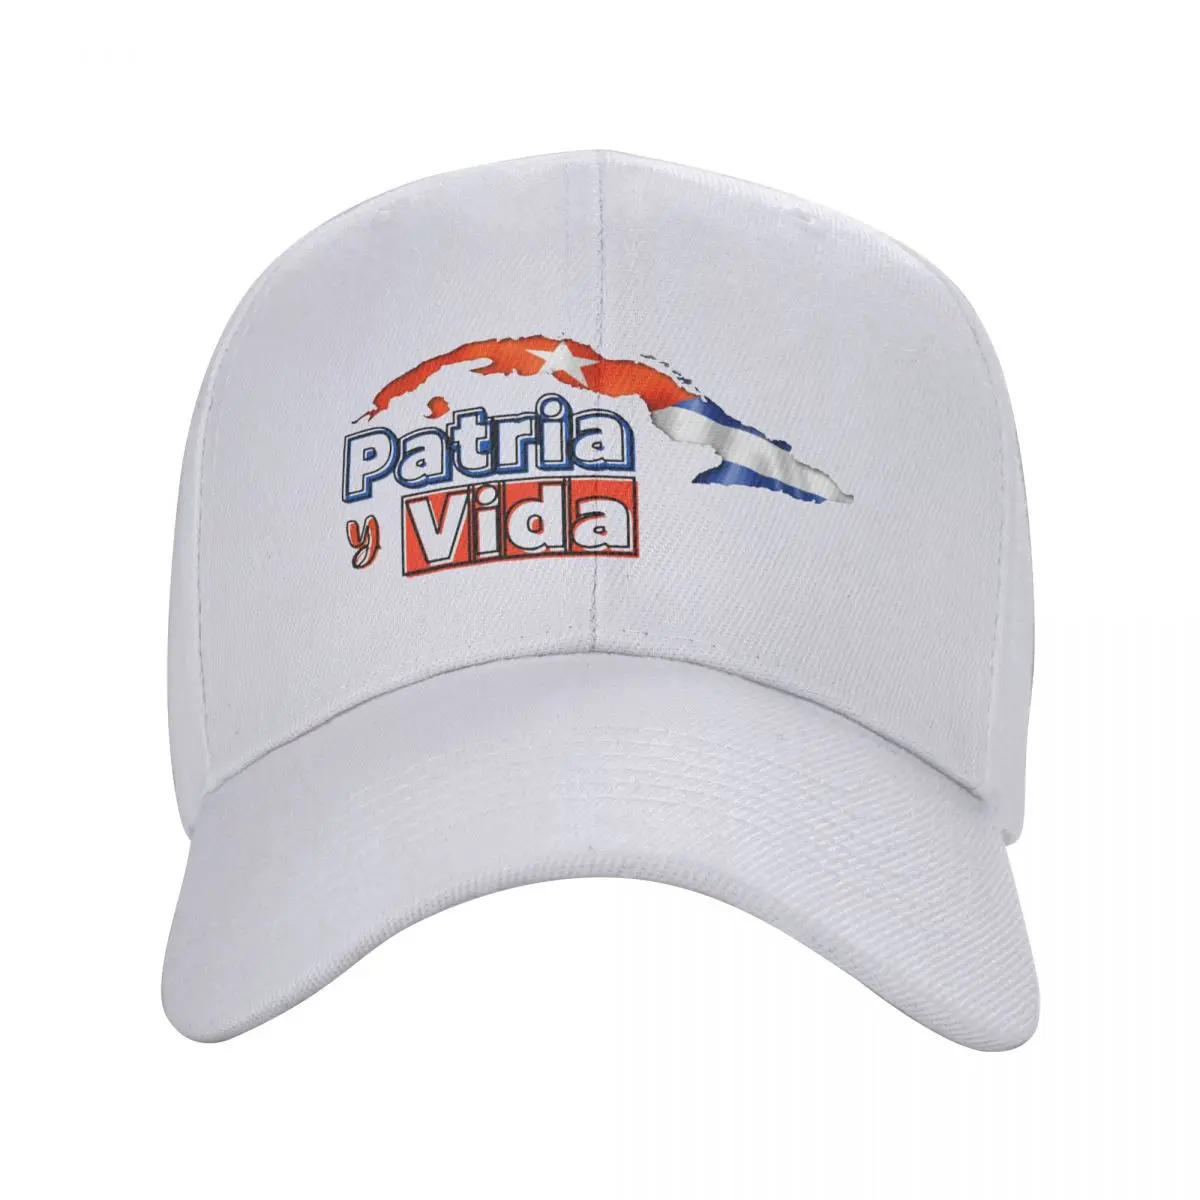 

Free Cuba Patria Y Vida Baseball Caps Men Women Hip-Hop Sun Hat Sos Cuba Hats Breathable Snapback Caps Fishing Hat Summer Hats